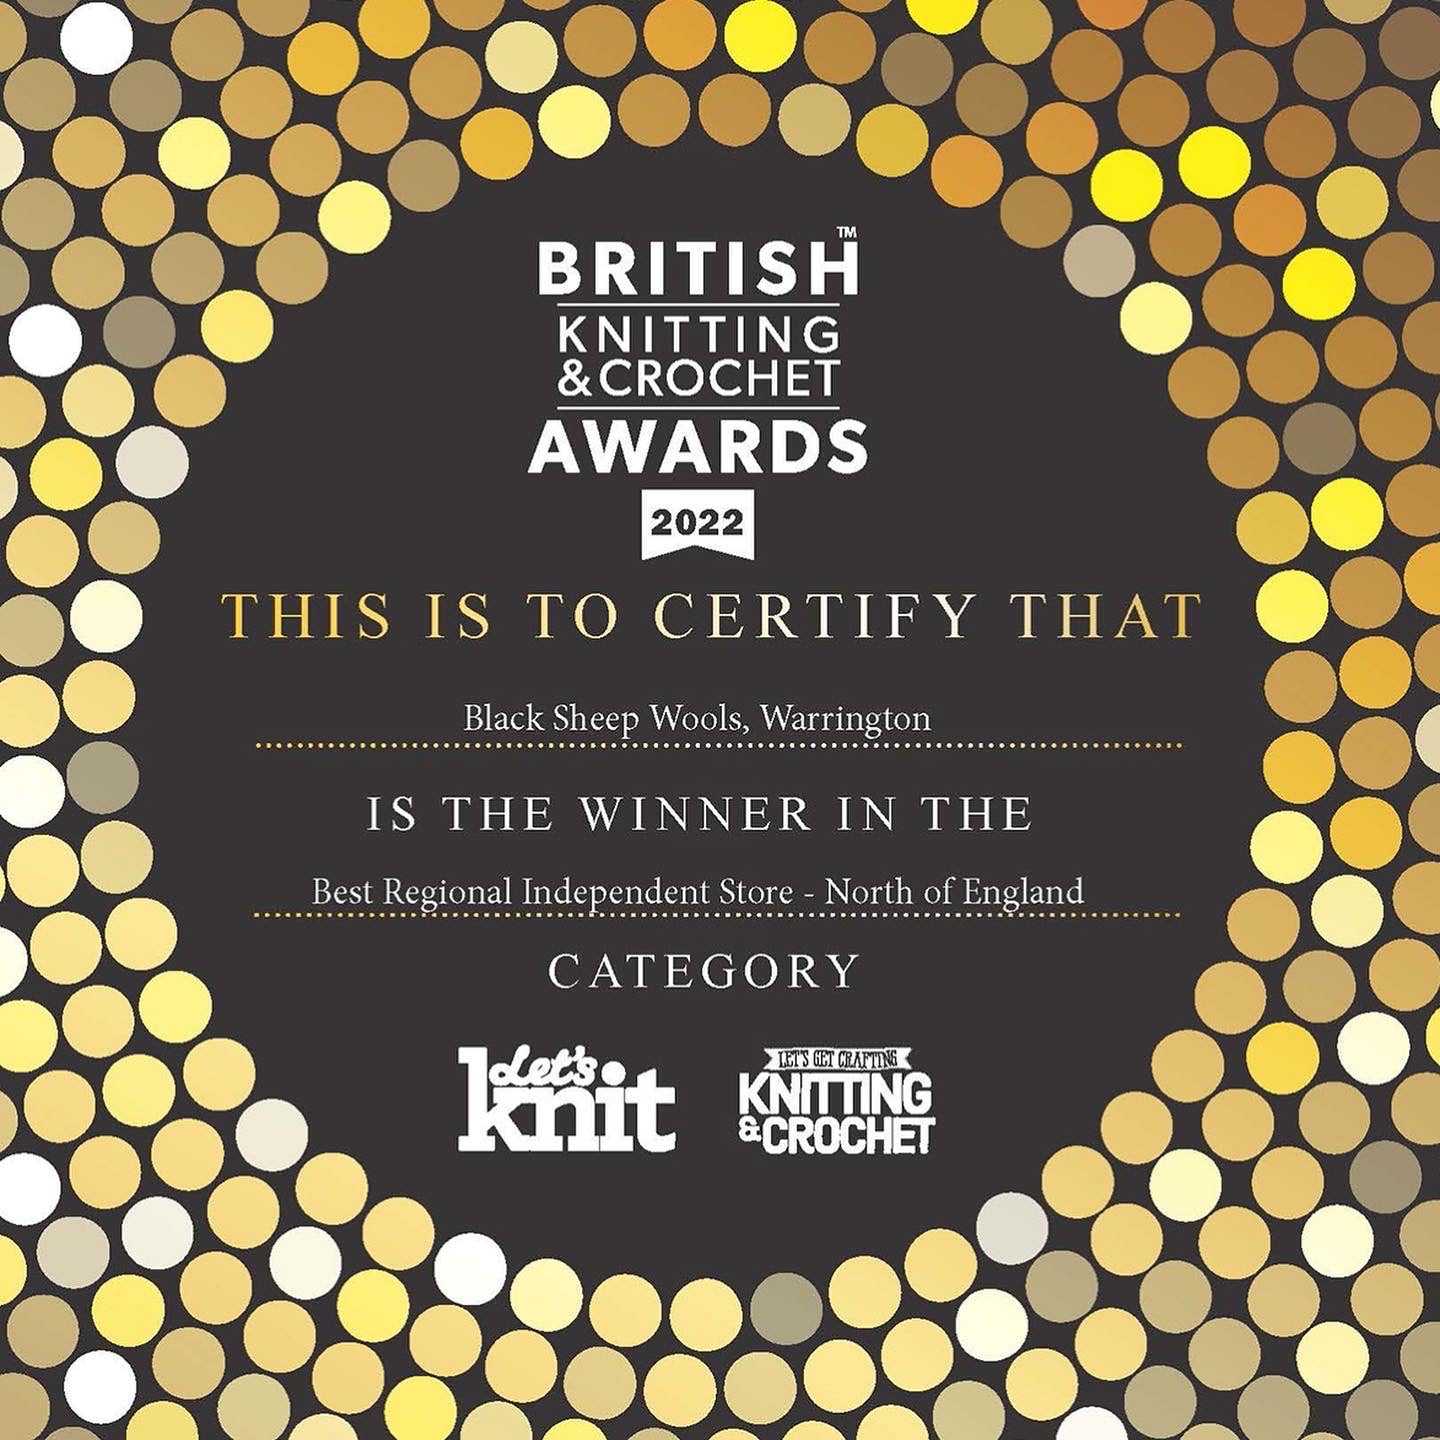 Award winning in 2022! - British Knitting & Crochet Awards